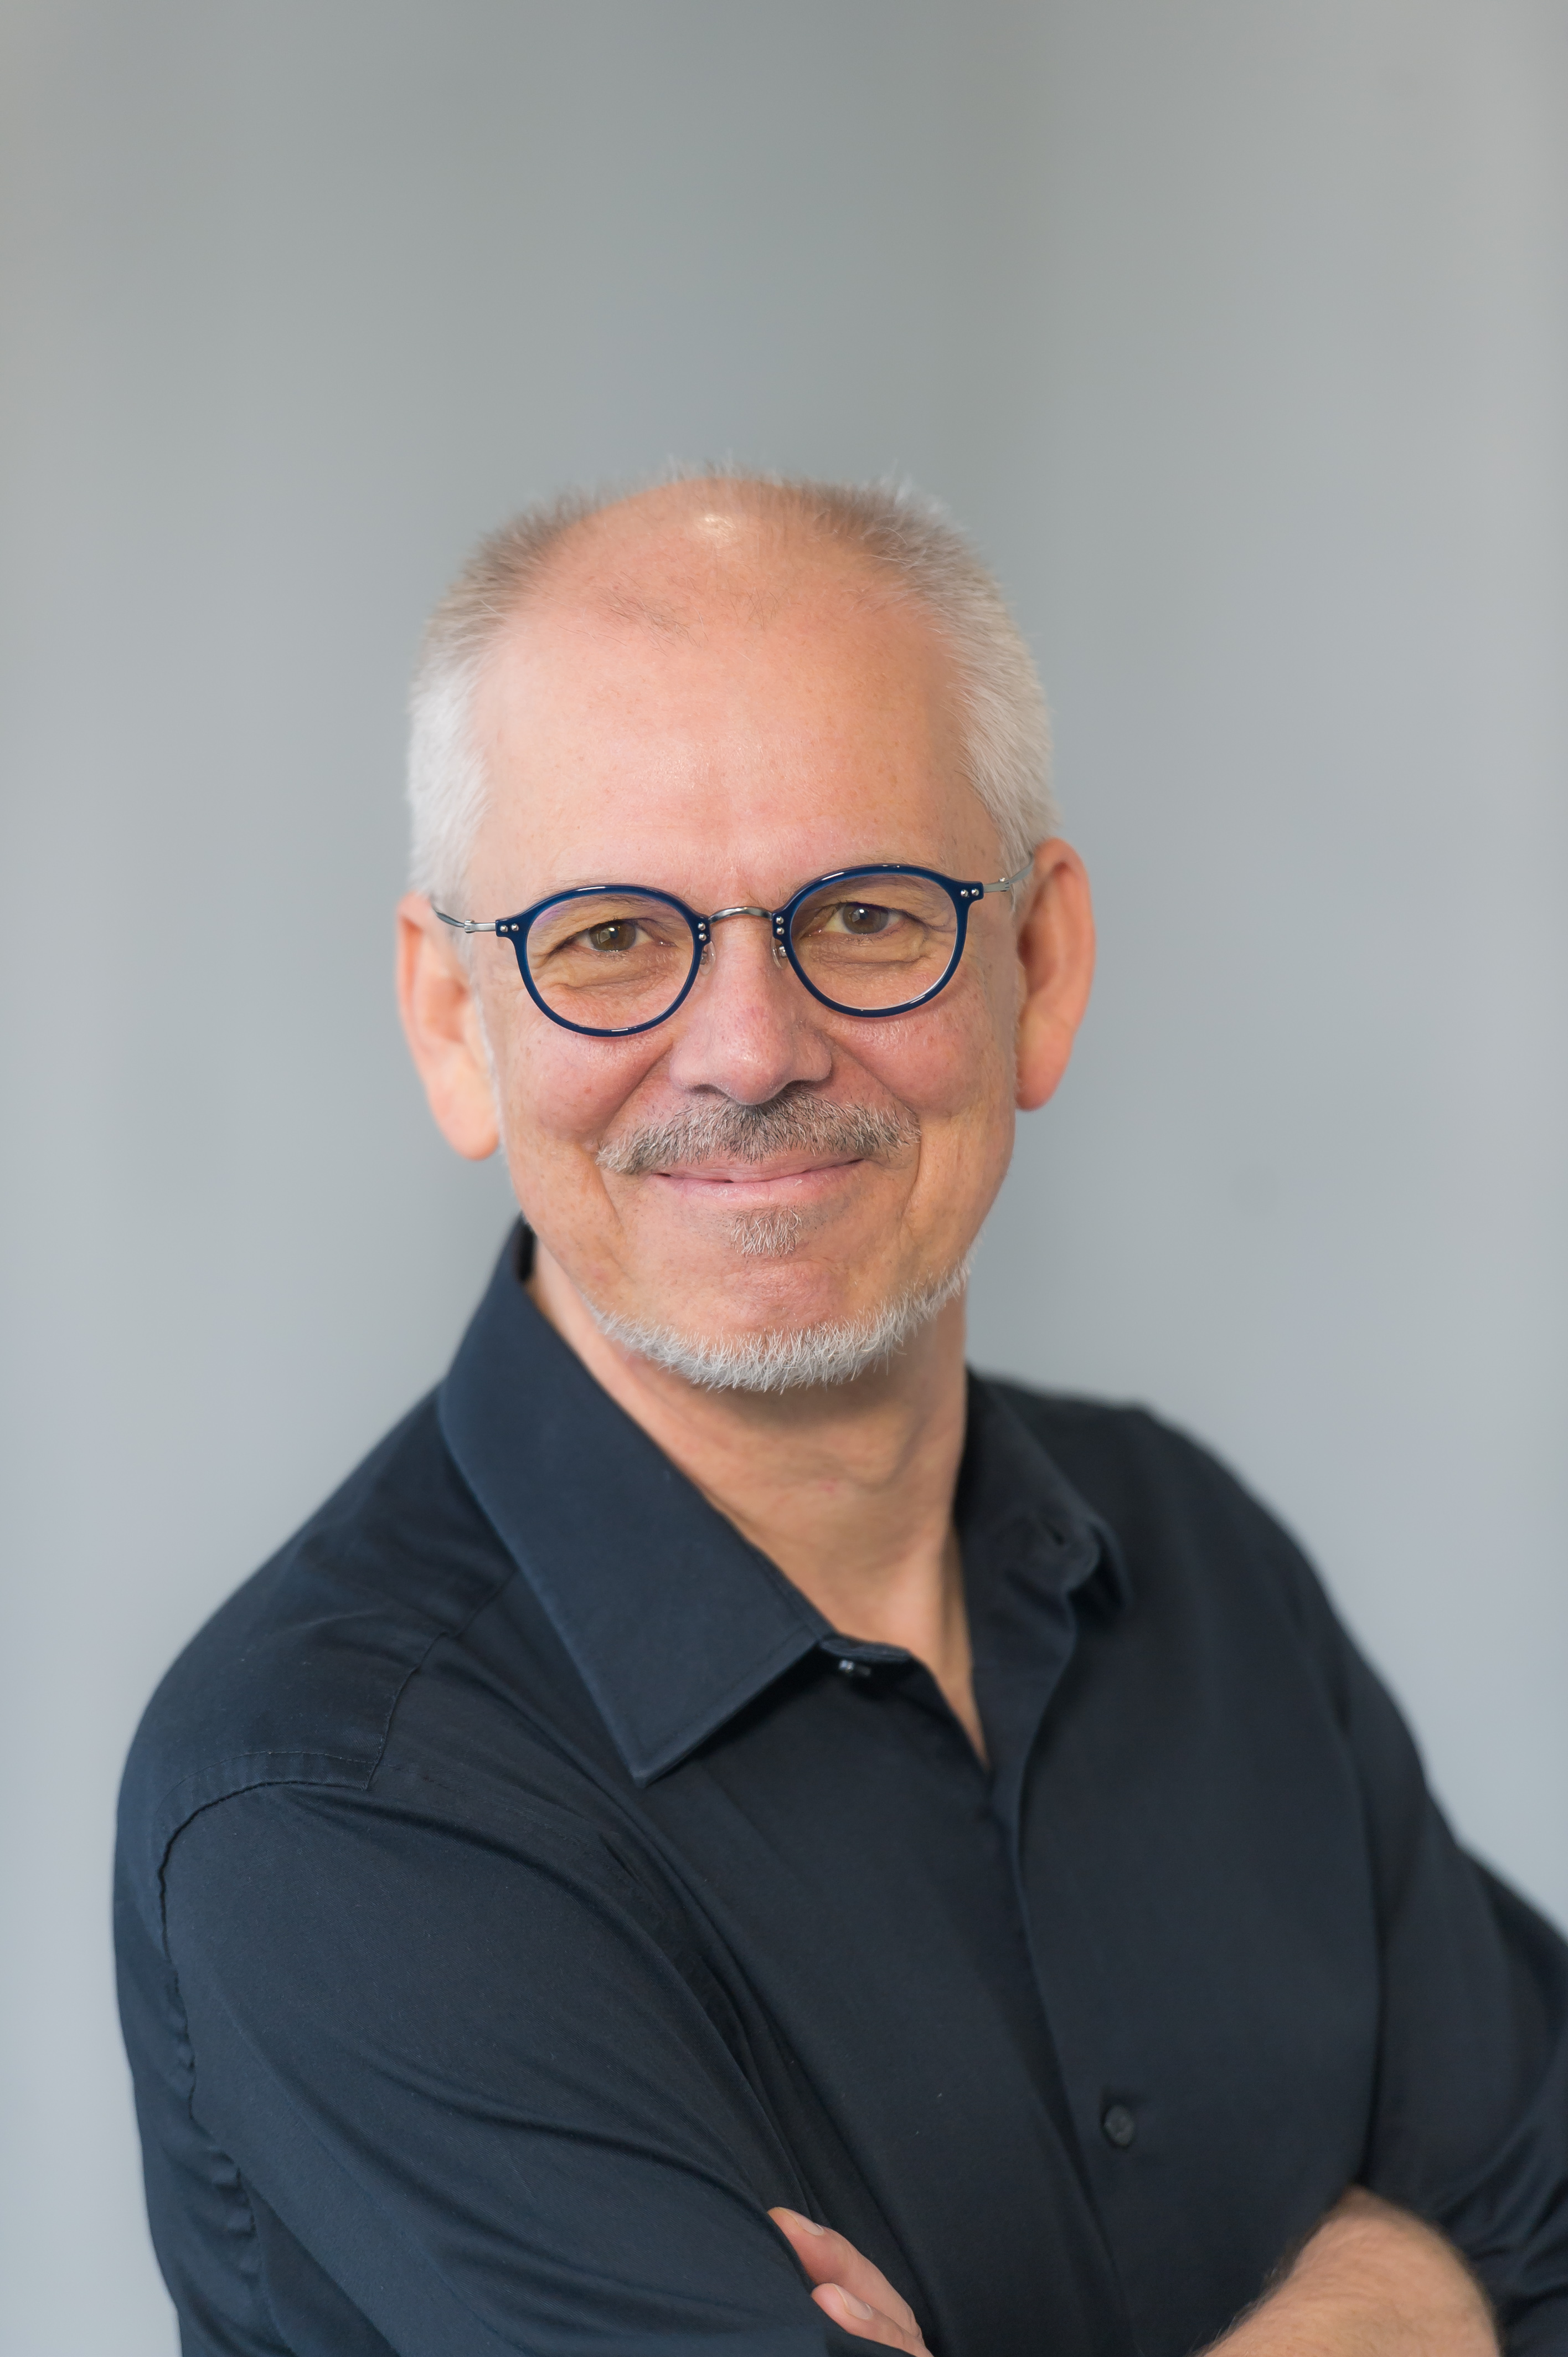 Karsten Kohler – Lecturer in Economics